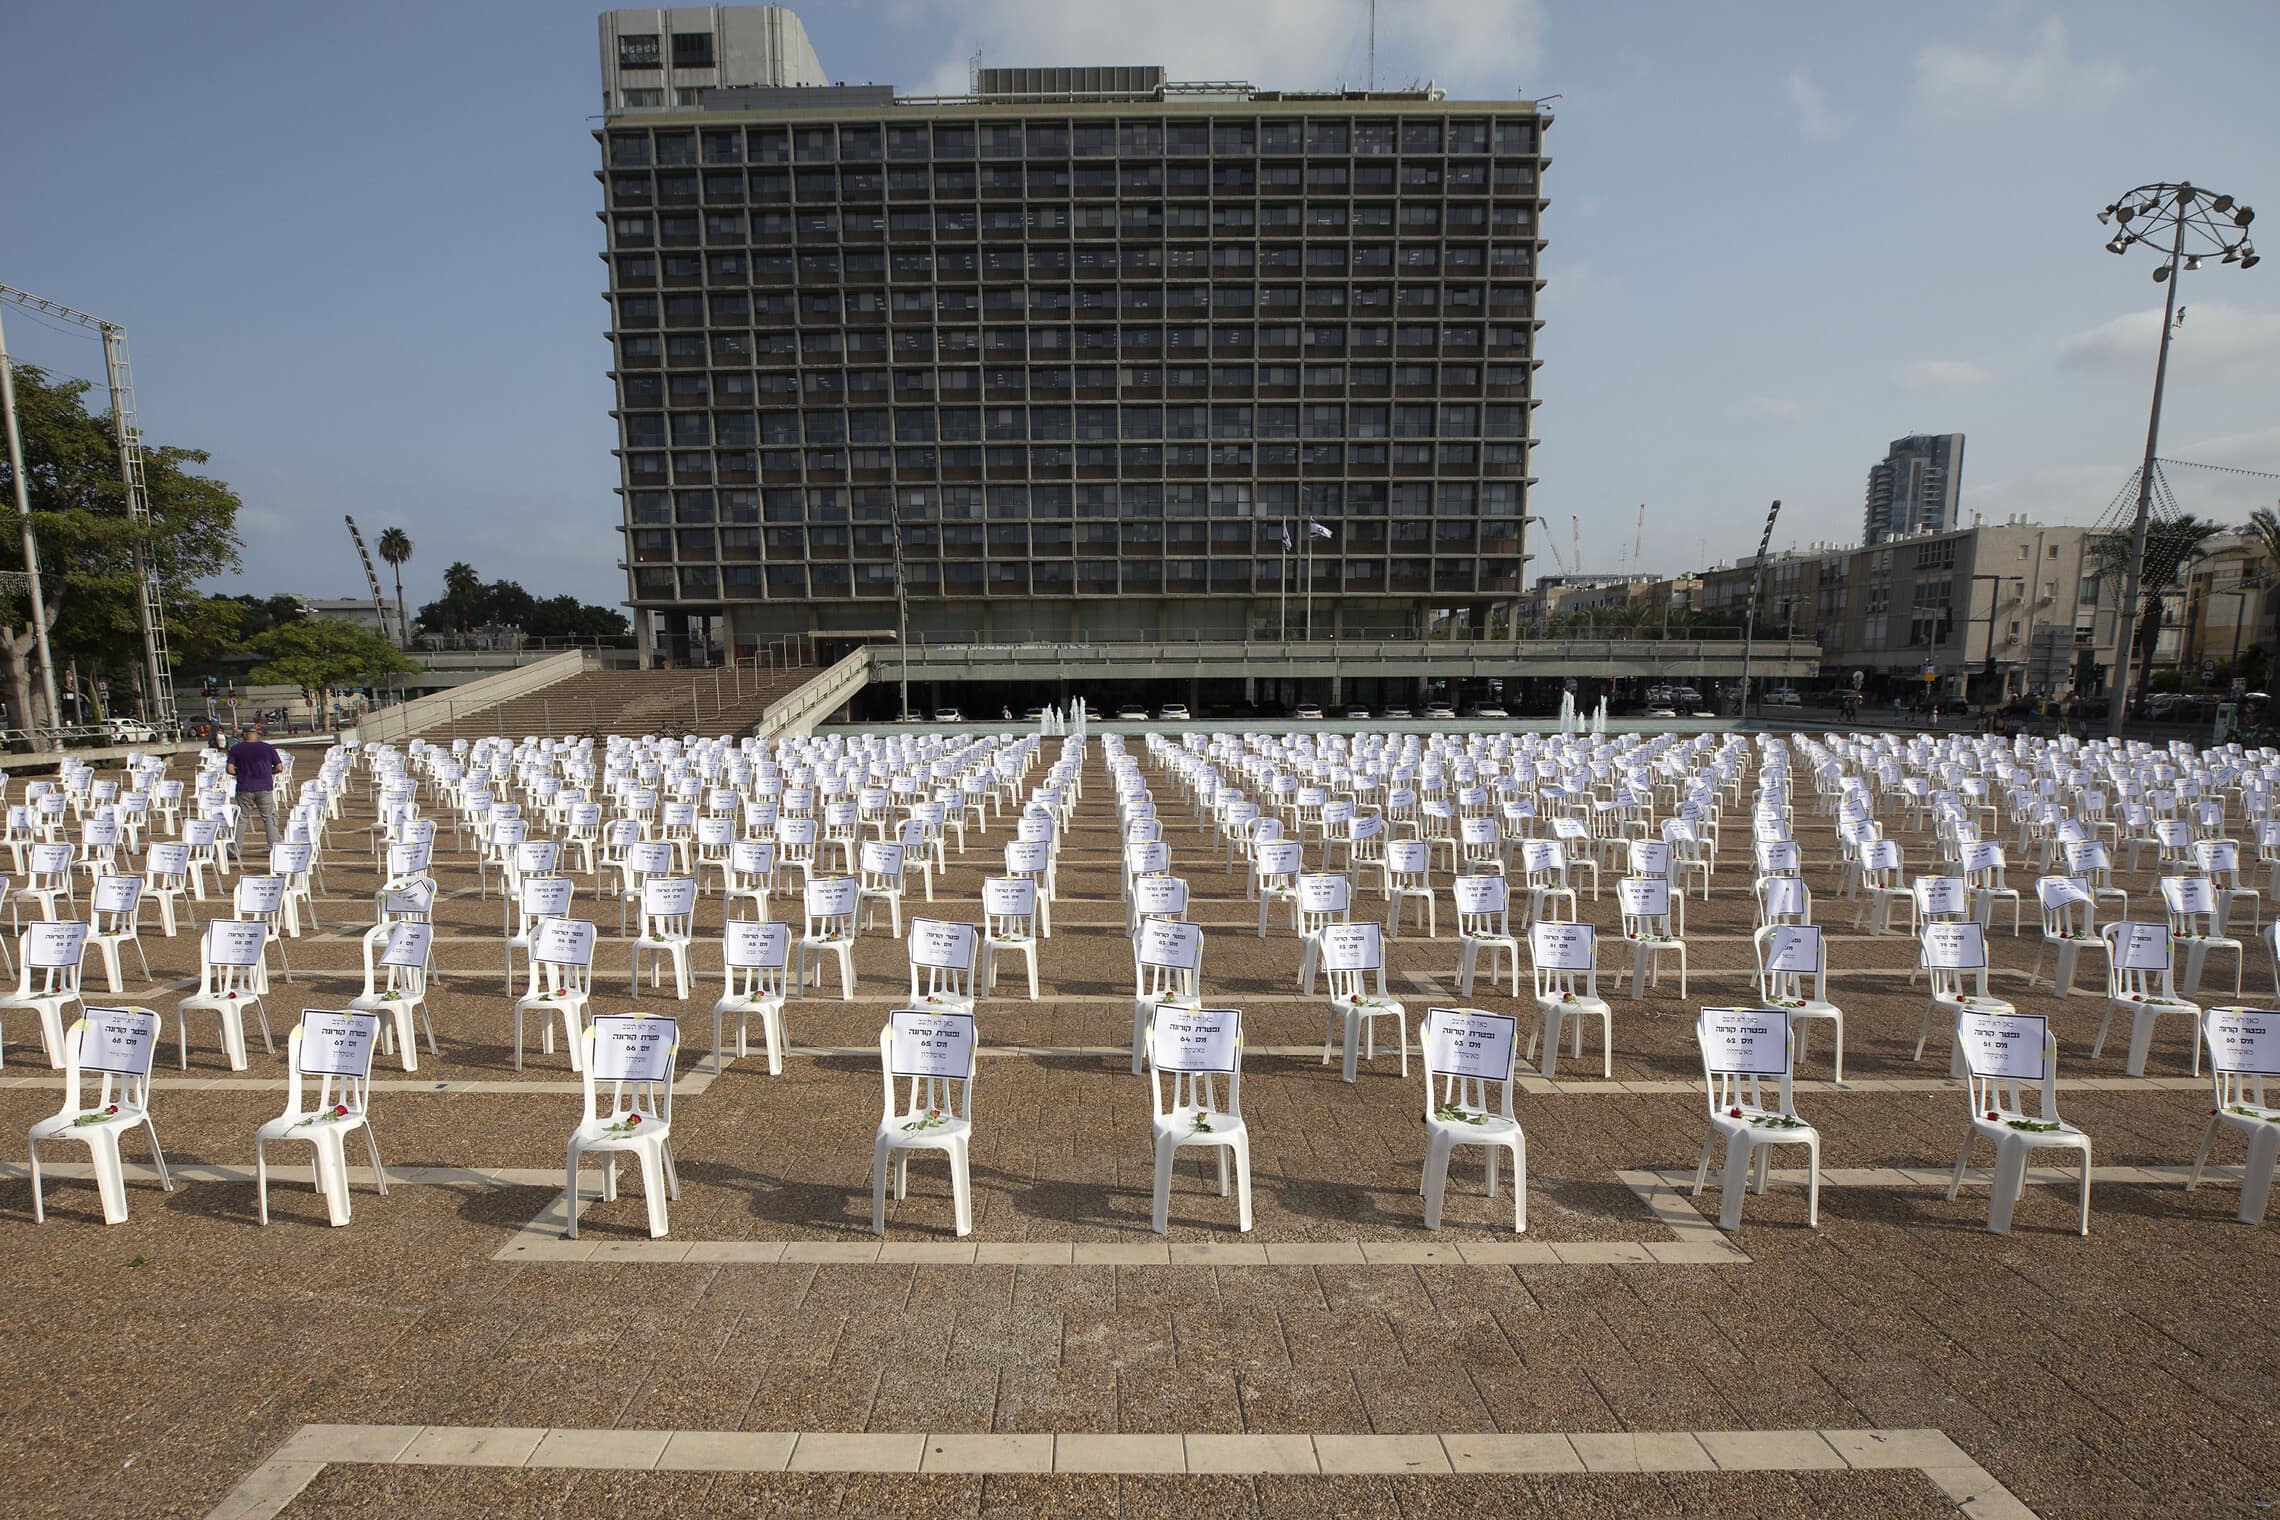 מיצג בכיכר רבין בתל אביב: אלף כיסאות לזכר אלף המתים מקורונה נכון ל-7 בספטמבר 2020 (צילום: AP Photo/Sebastian Scheiner)